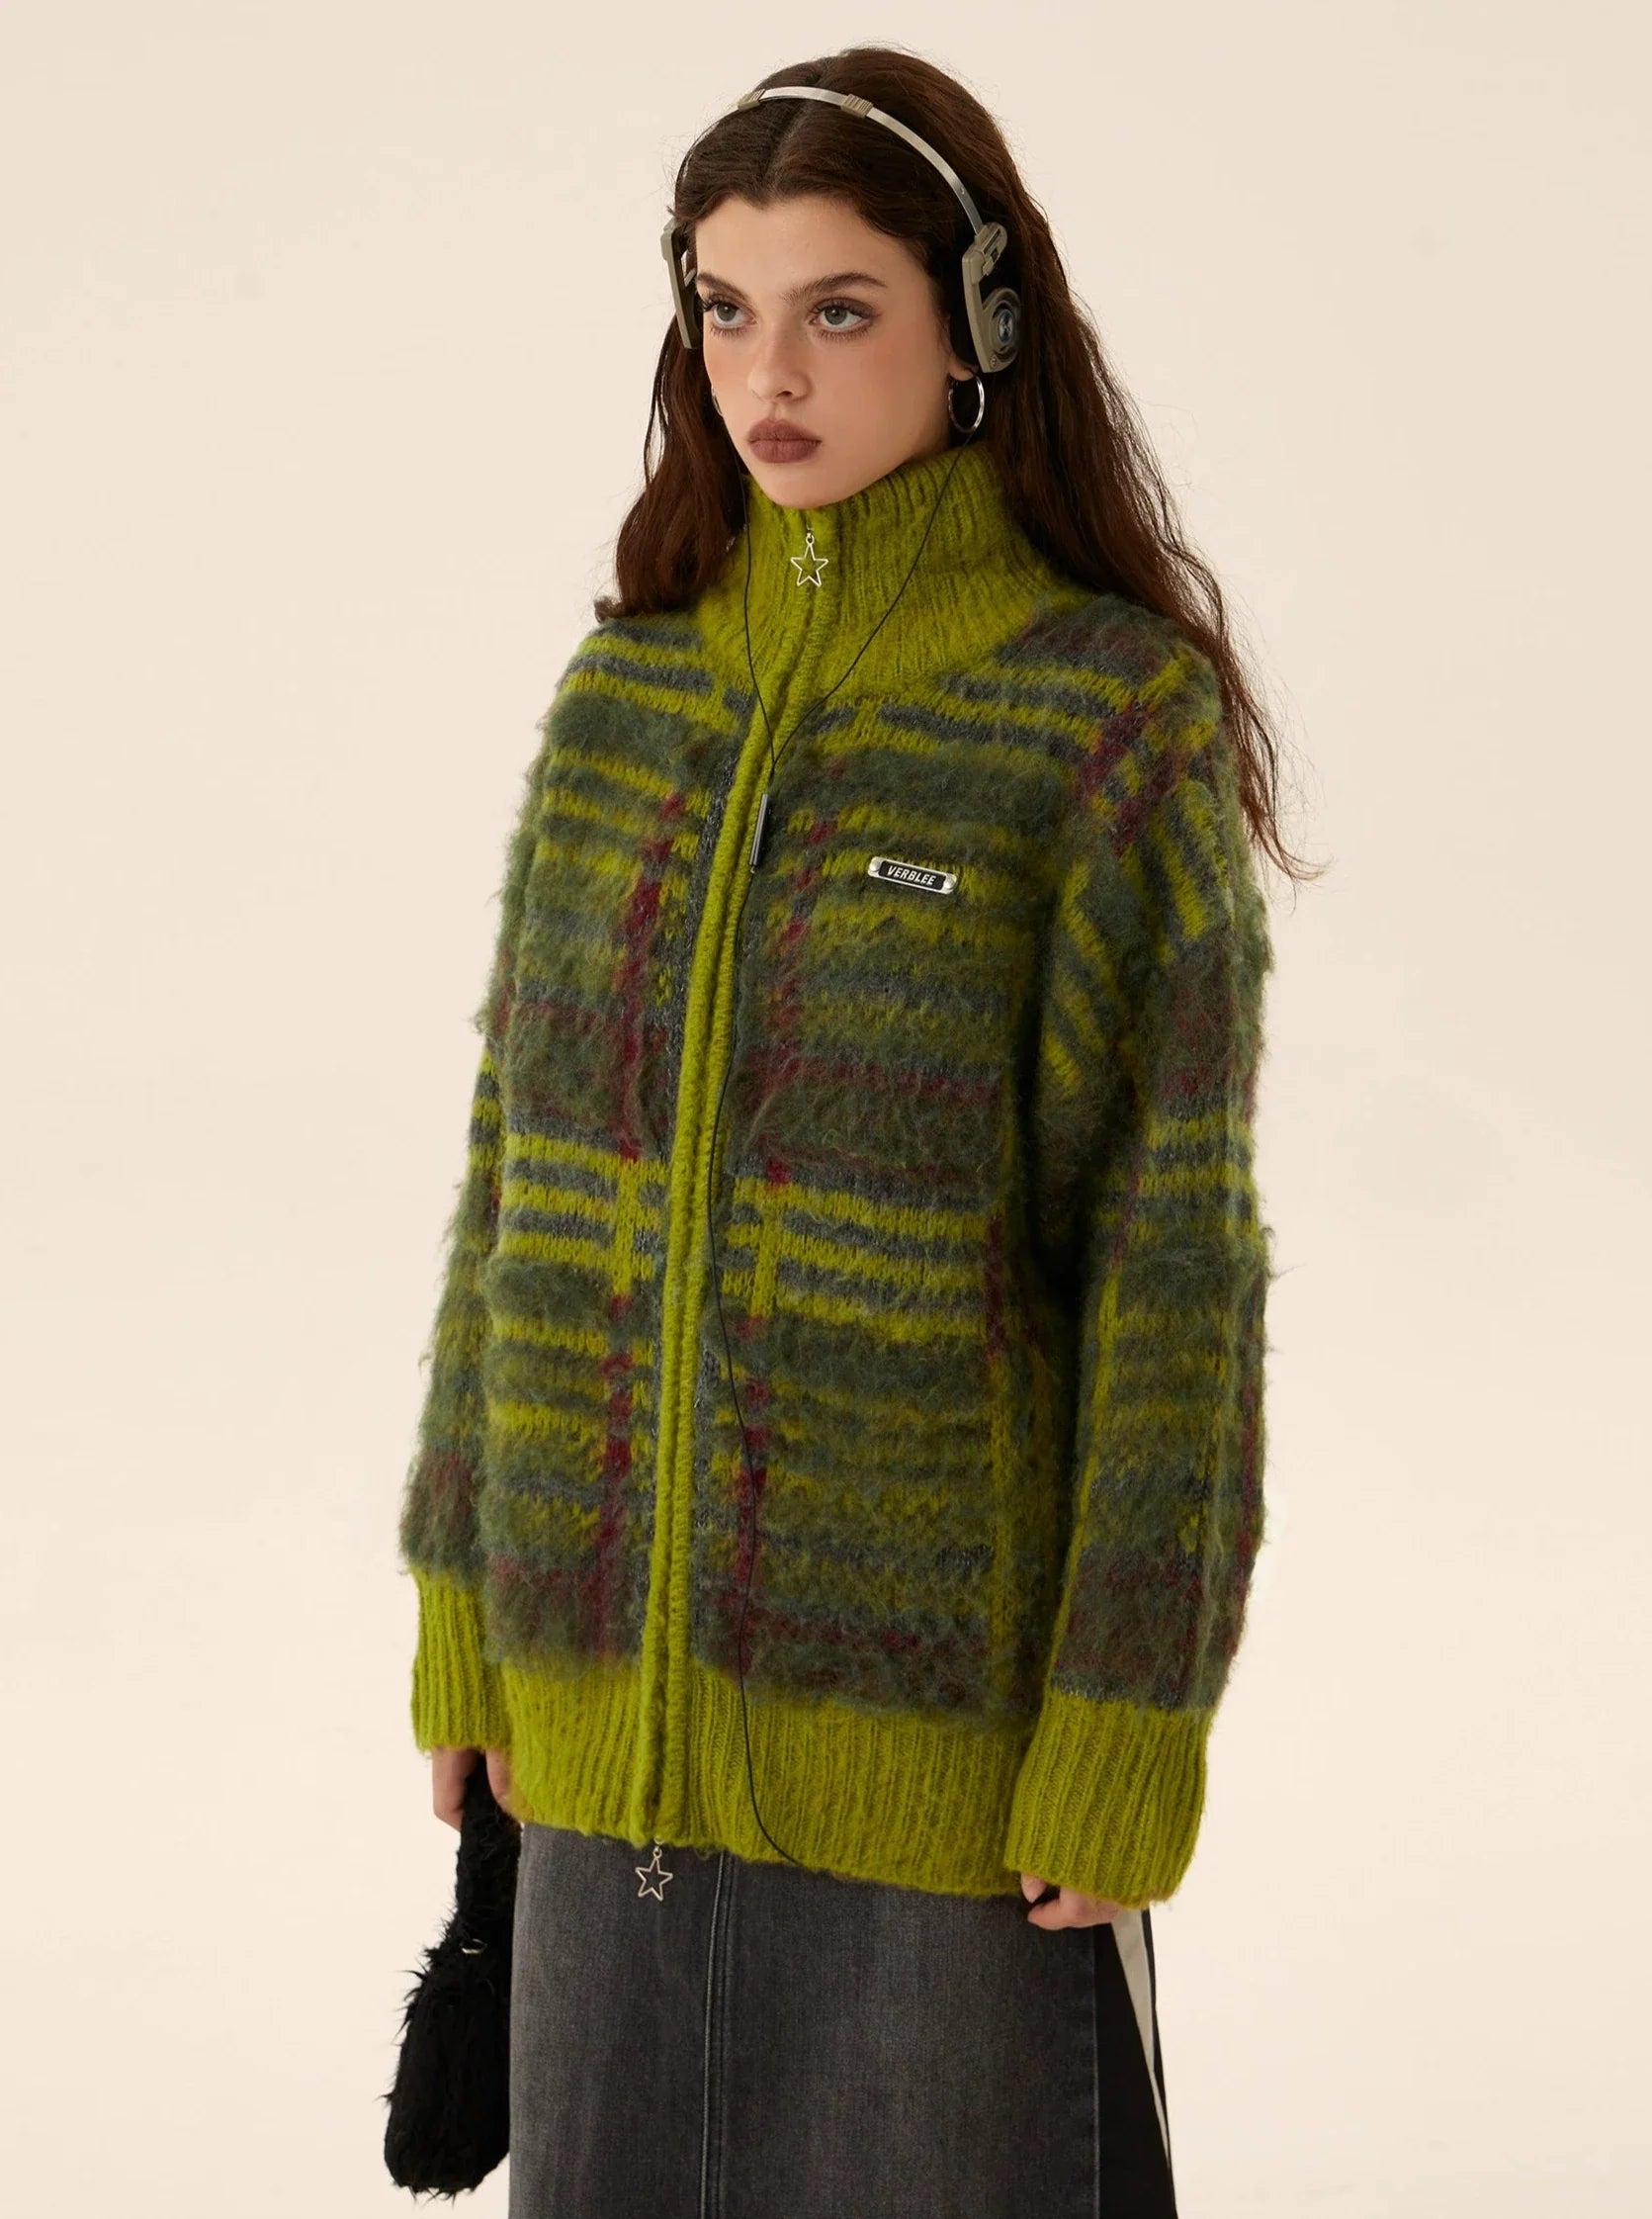 Mohair Knit Zipper Cardigan Sweater Coat - chiclara